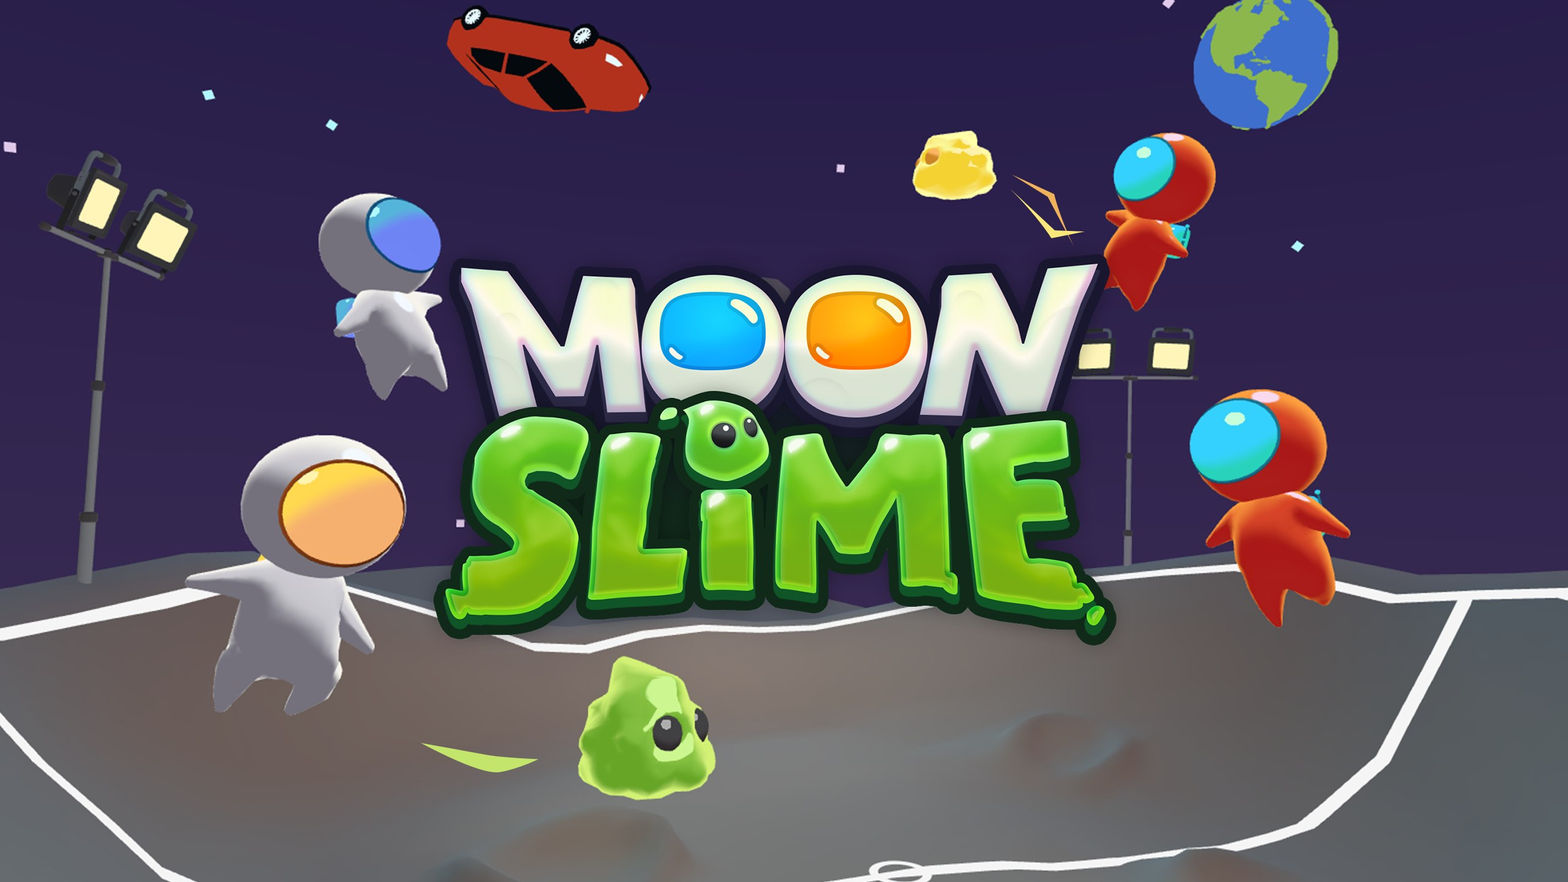 Moon Slime: Space Sport